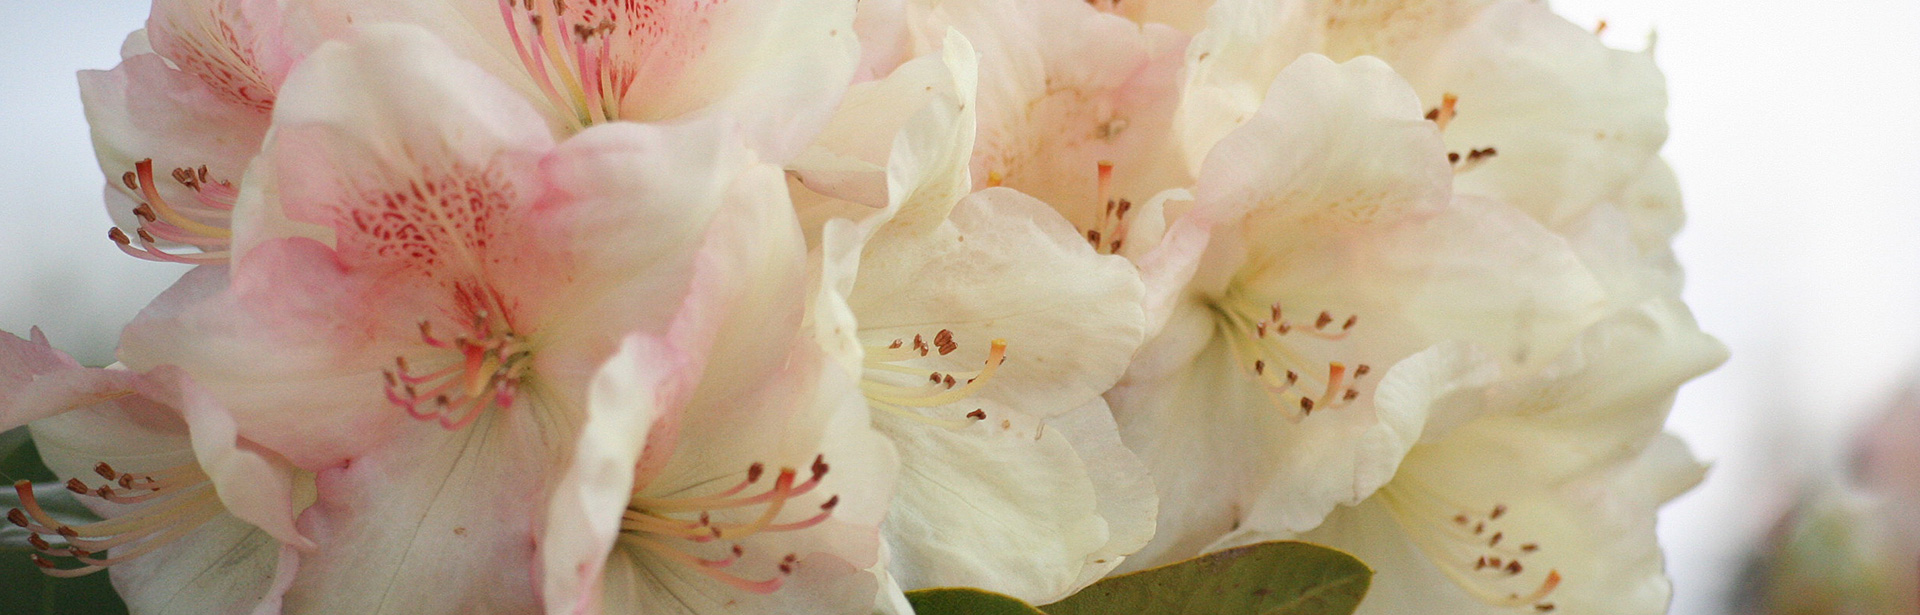 EnnoHinrichs_RhododendronHybrGoldbukett